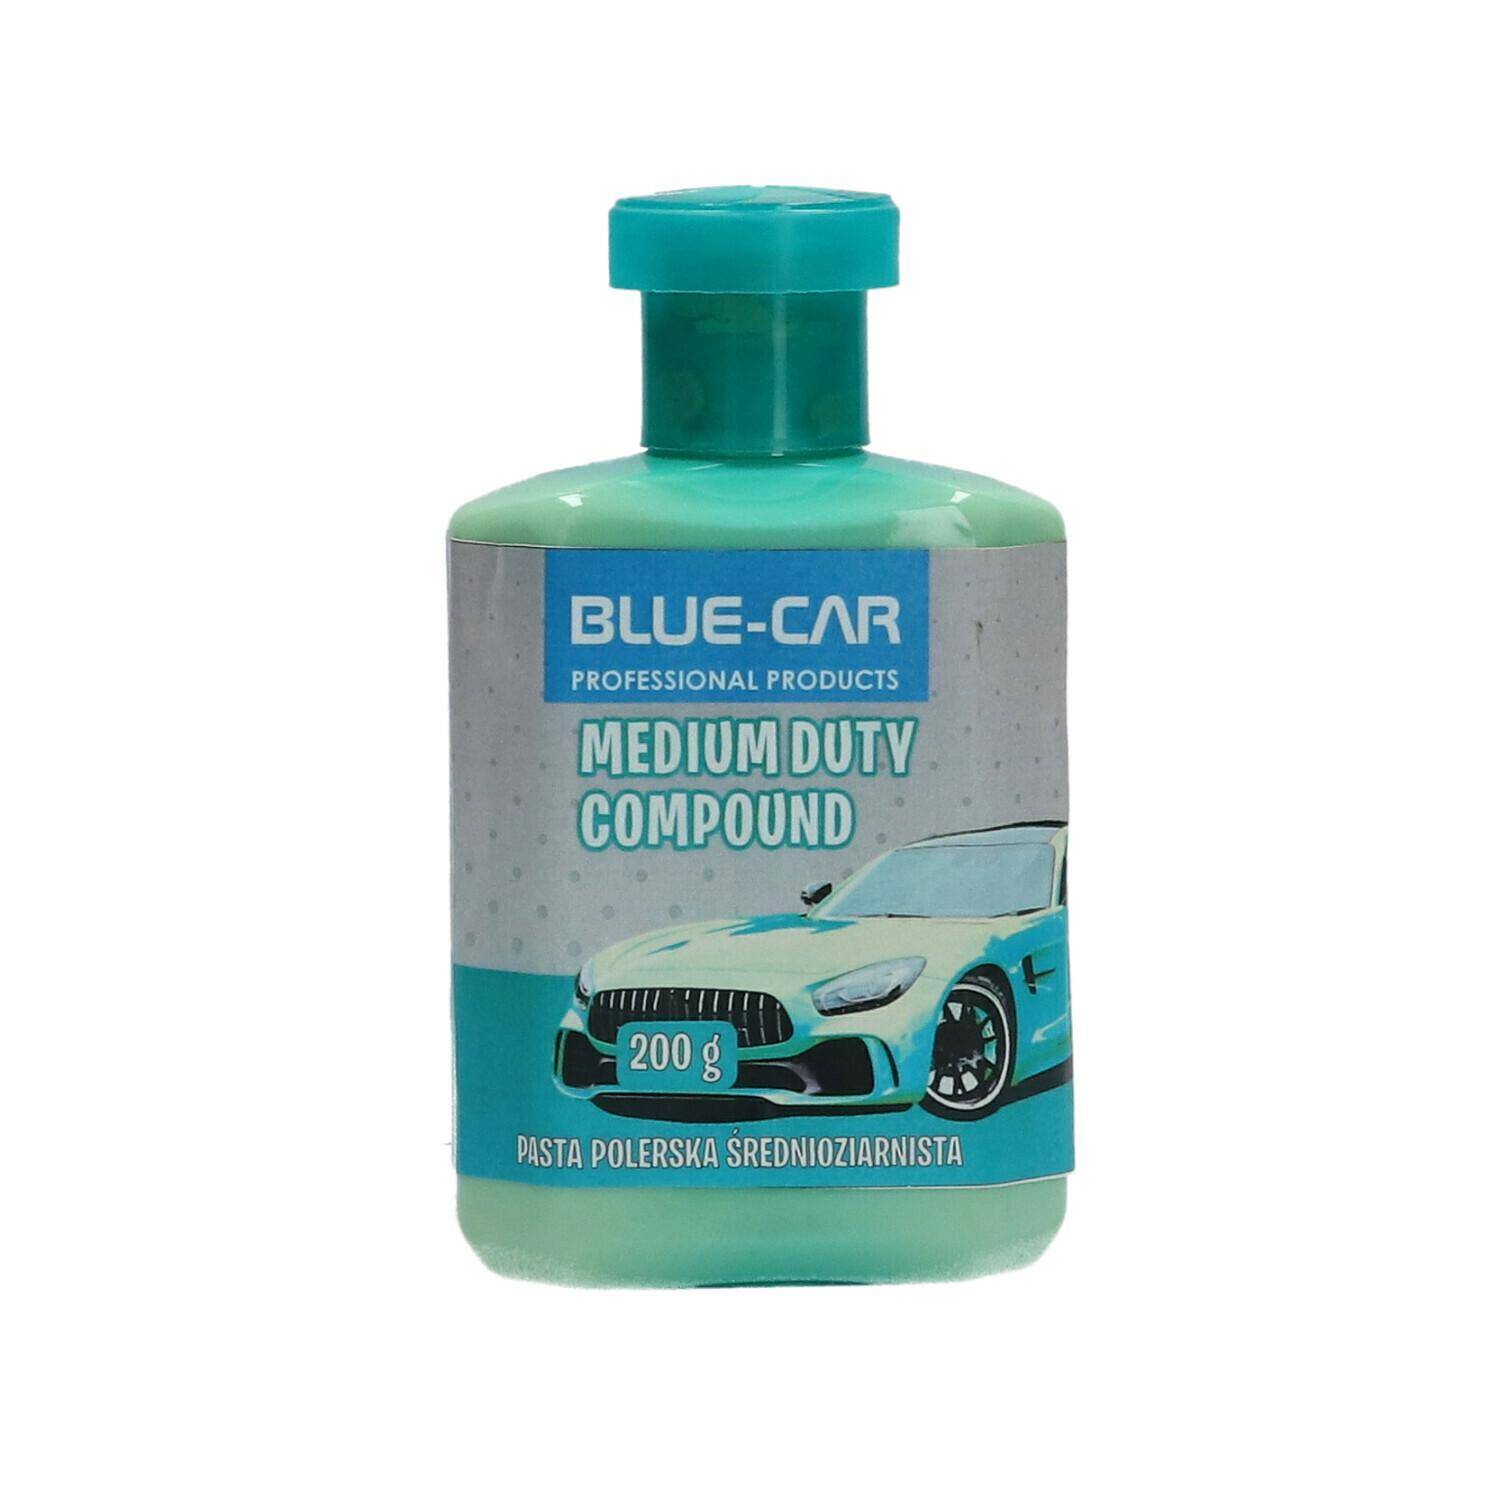 BLUE-CAR MEDIUM DUTY COMPOUND